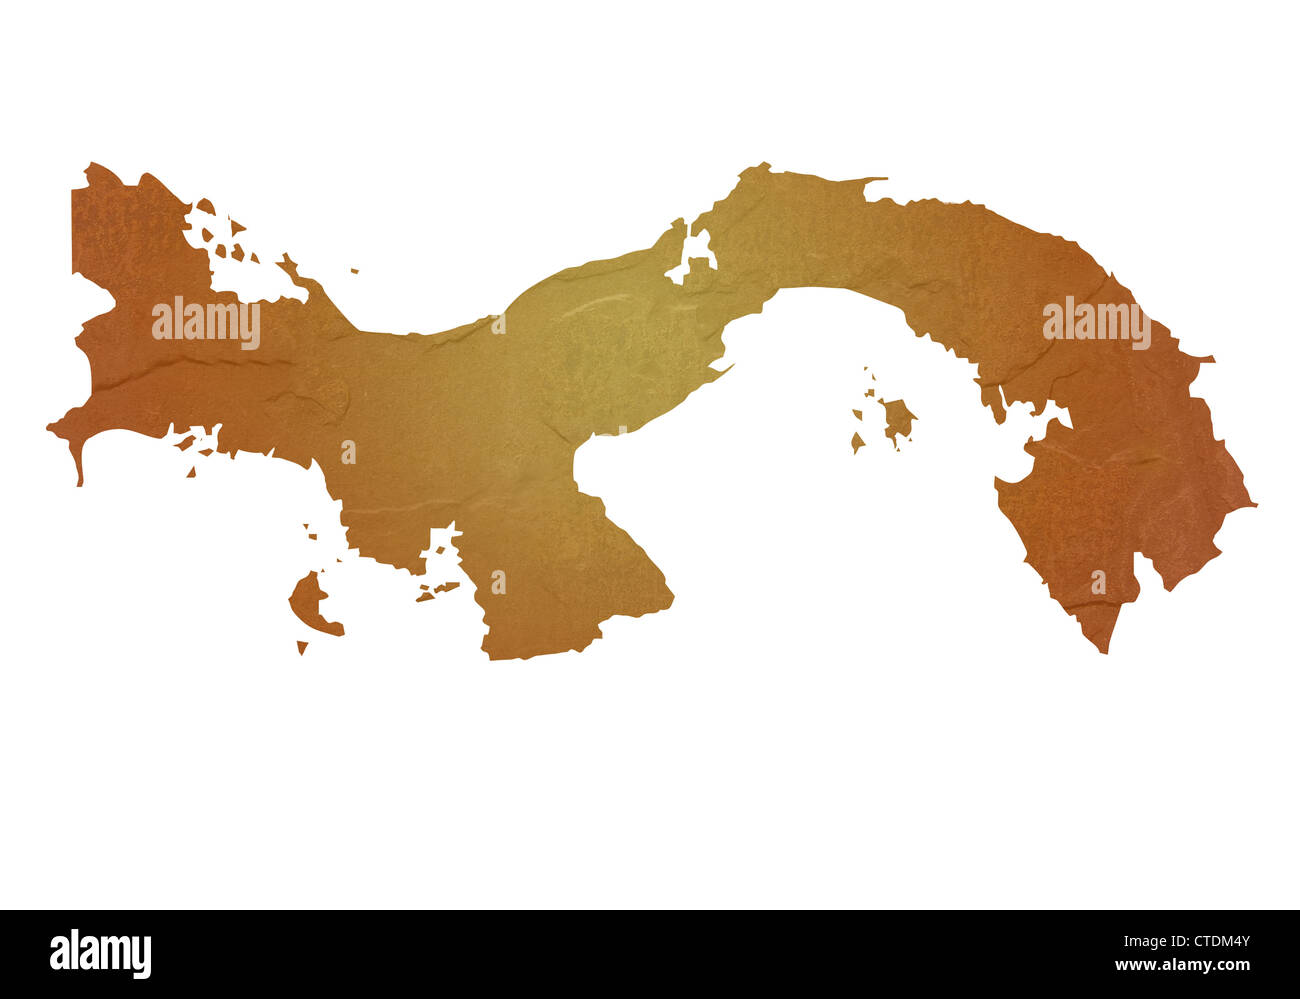 Strukturierte Karte von Panama Karte mit braunen Felsen oder Stein Textur, isoliert auf weißem Hintergrund mit Beschneidungspfad. Stockfoto